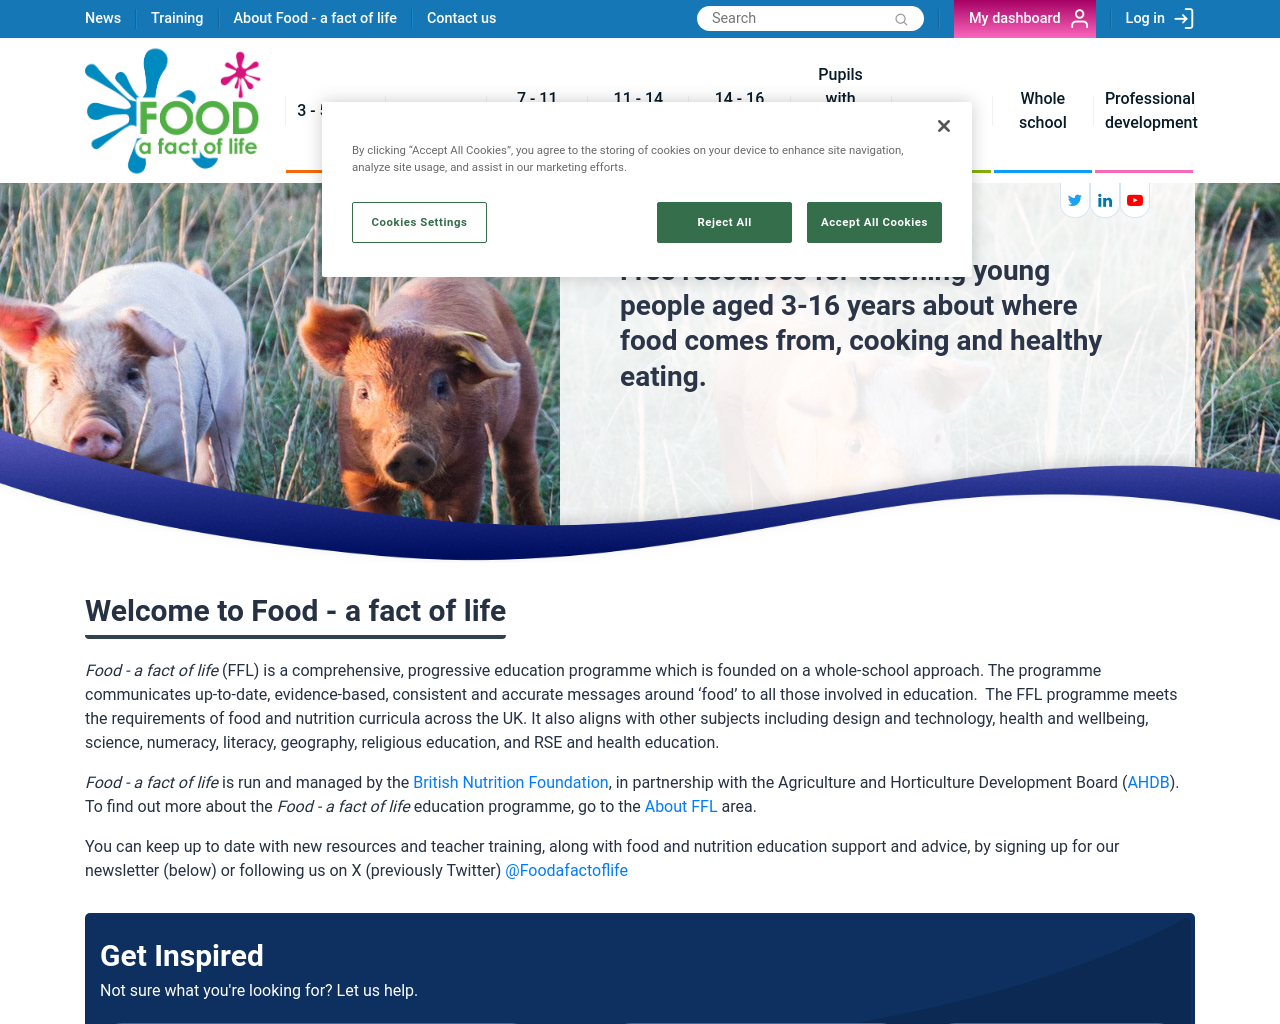 foodafactoflife.org.uk